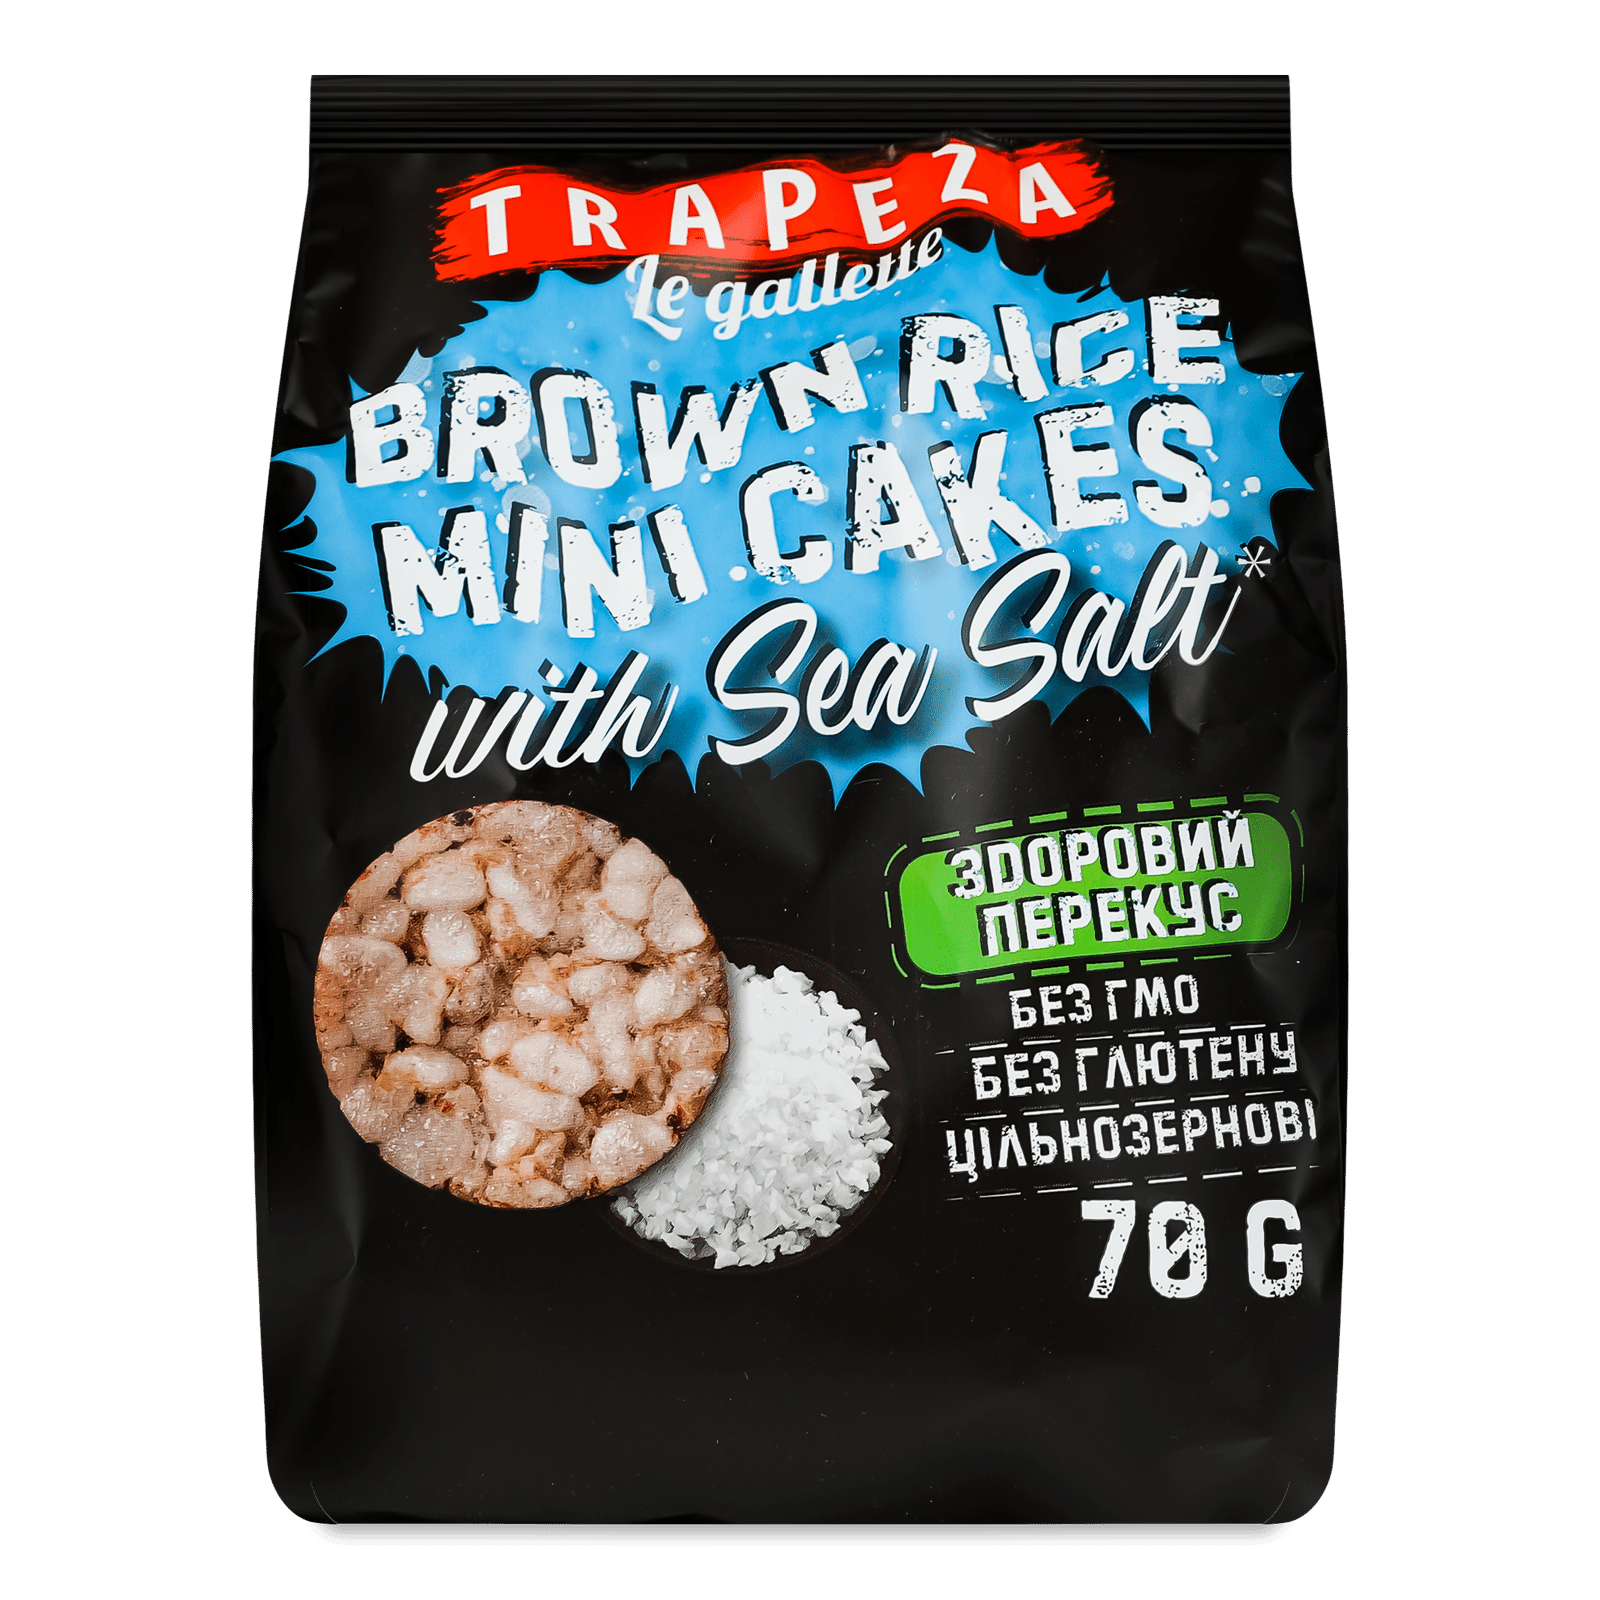 Міні-хлібці Trapeza рисові з морською сіллю - 1